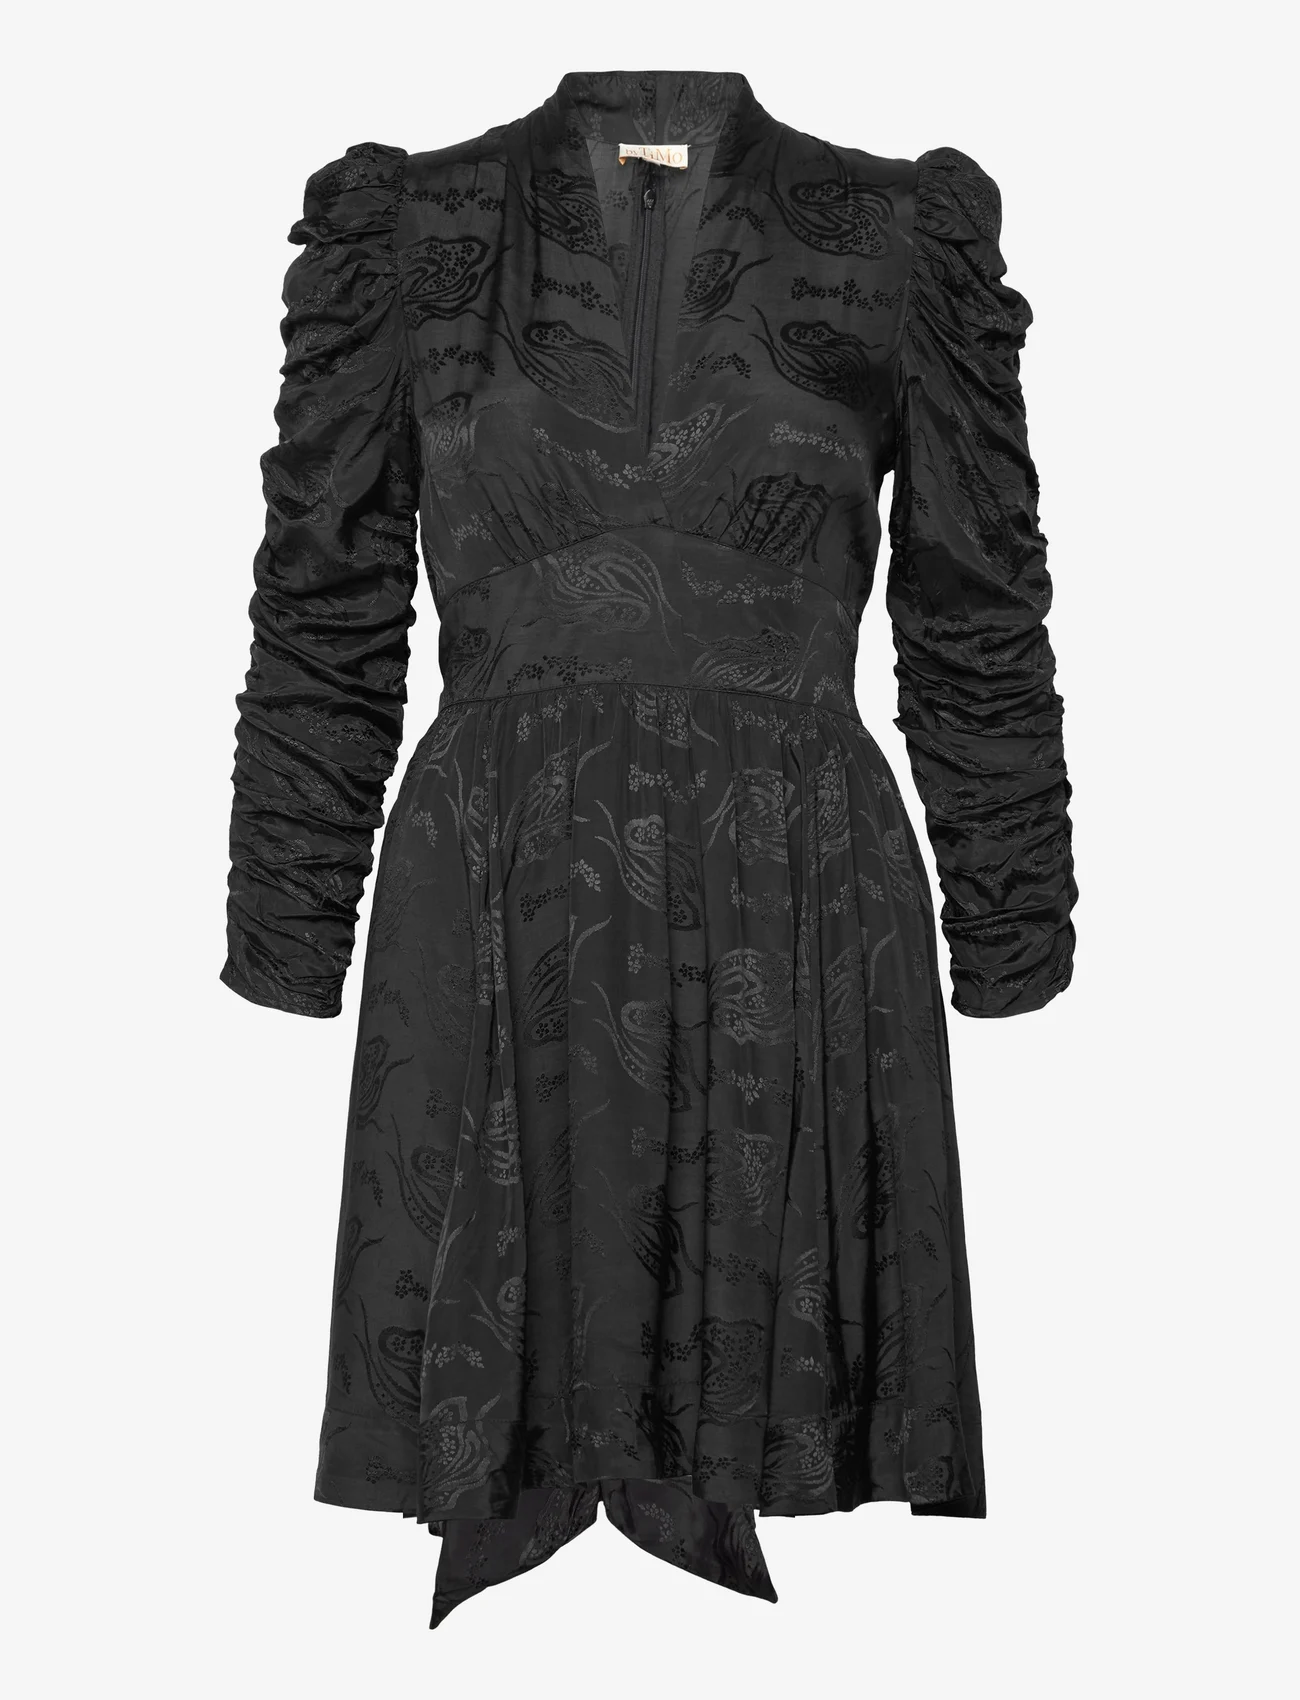 by Ti Mo - Jacquard Tieband Dress - odzież imprezowa w cenach outletowych - 099 - black - 0